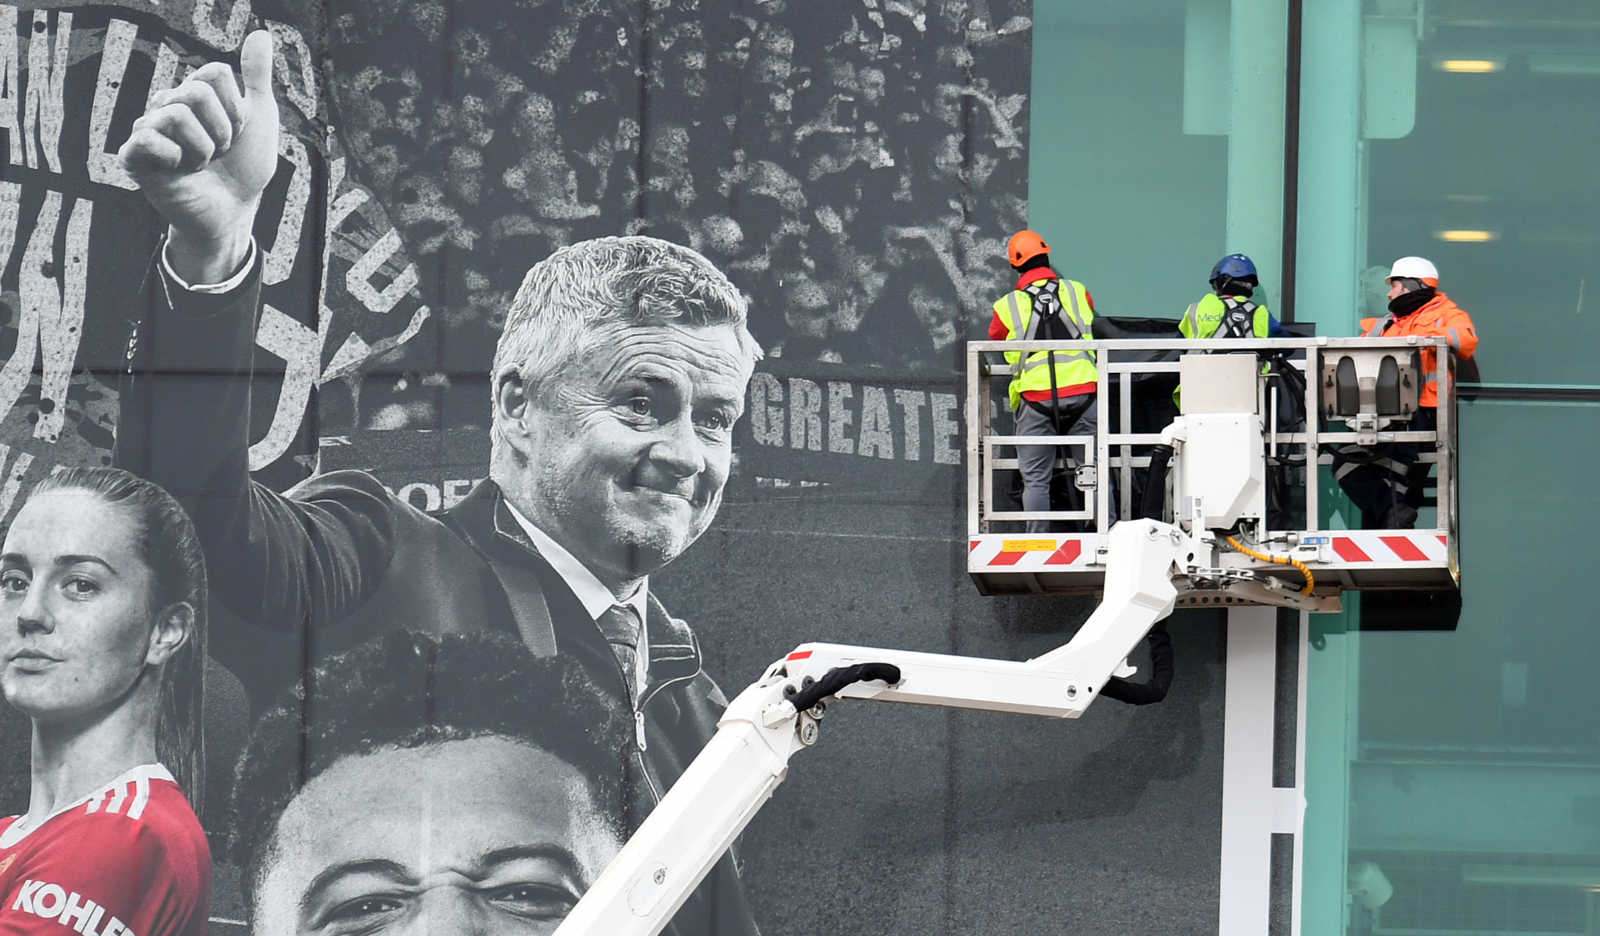 Manchester United tear down giant mural of Ole Gunnar Solskjaer